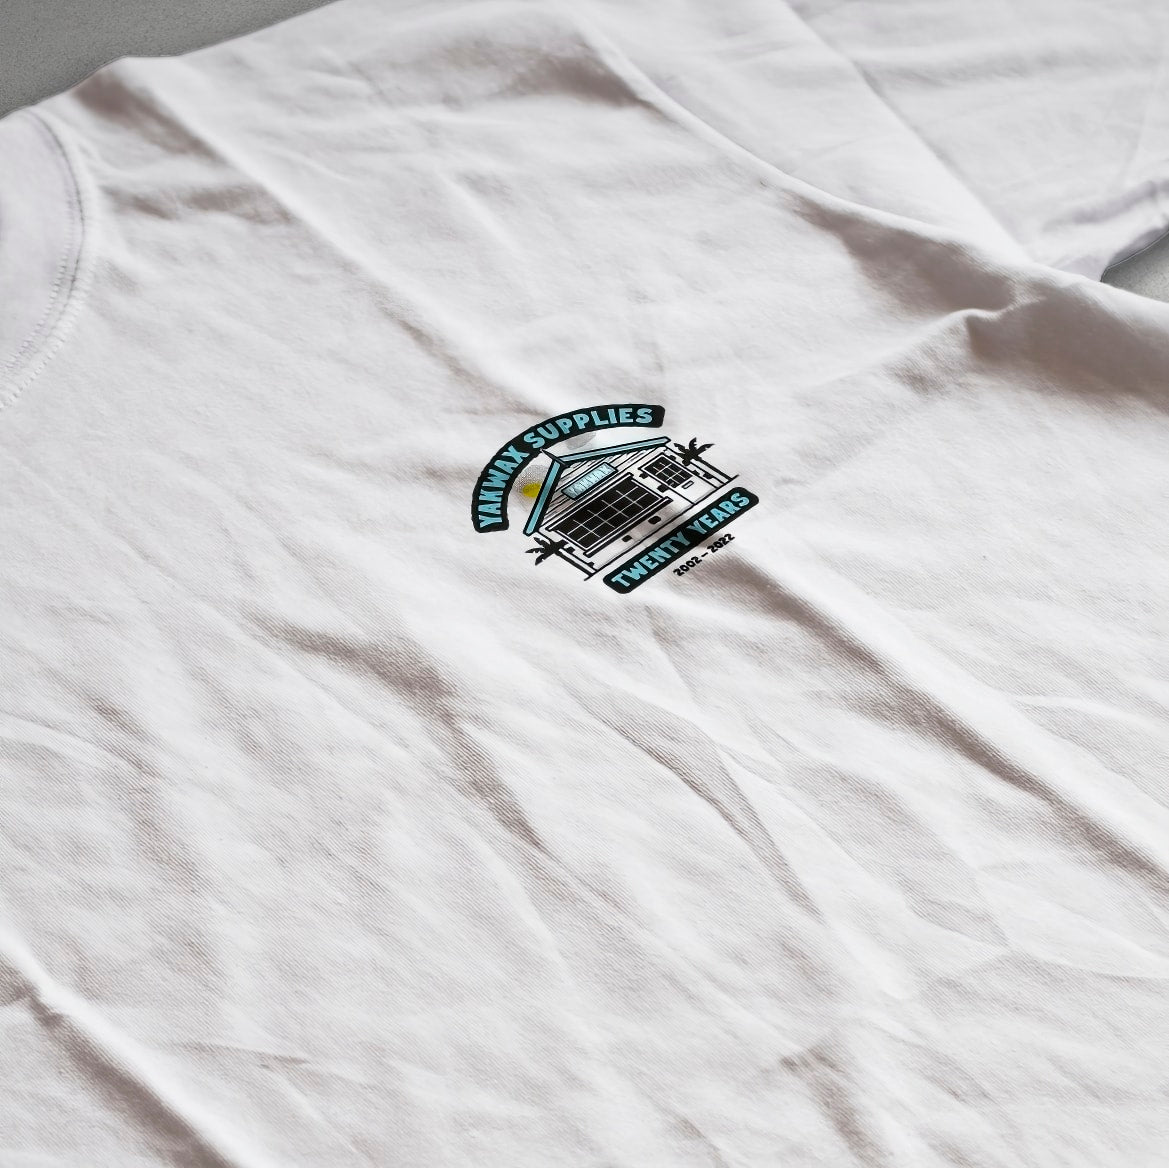 Yakwax 20 Year Anniversary T-Shirt - White - Mens Graphic T-Shirt by Yakwax